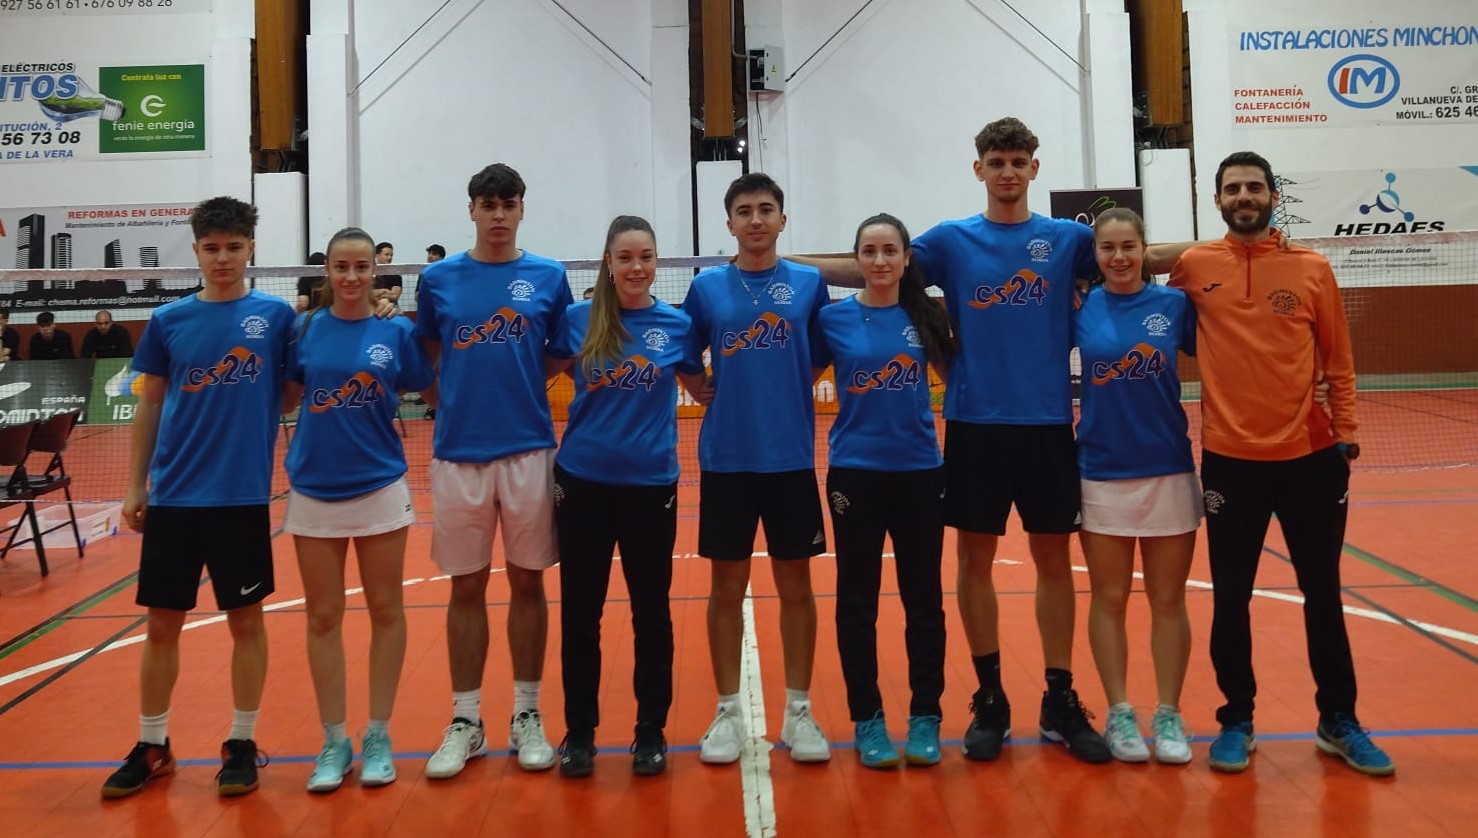 El Club Badminton Soria-CS24 certifica virtualmente la permanencia